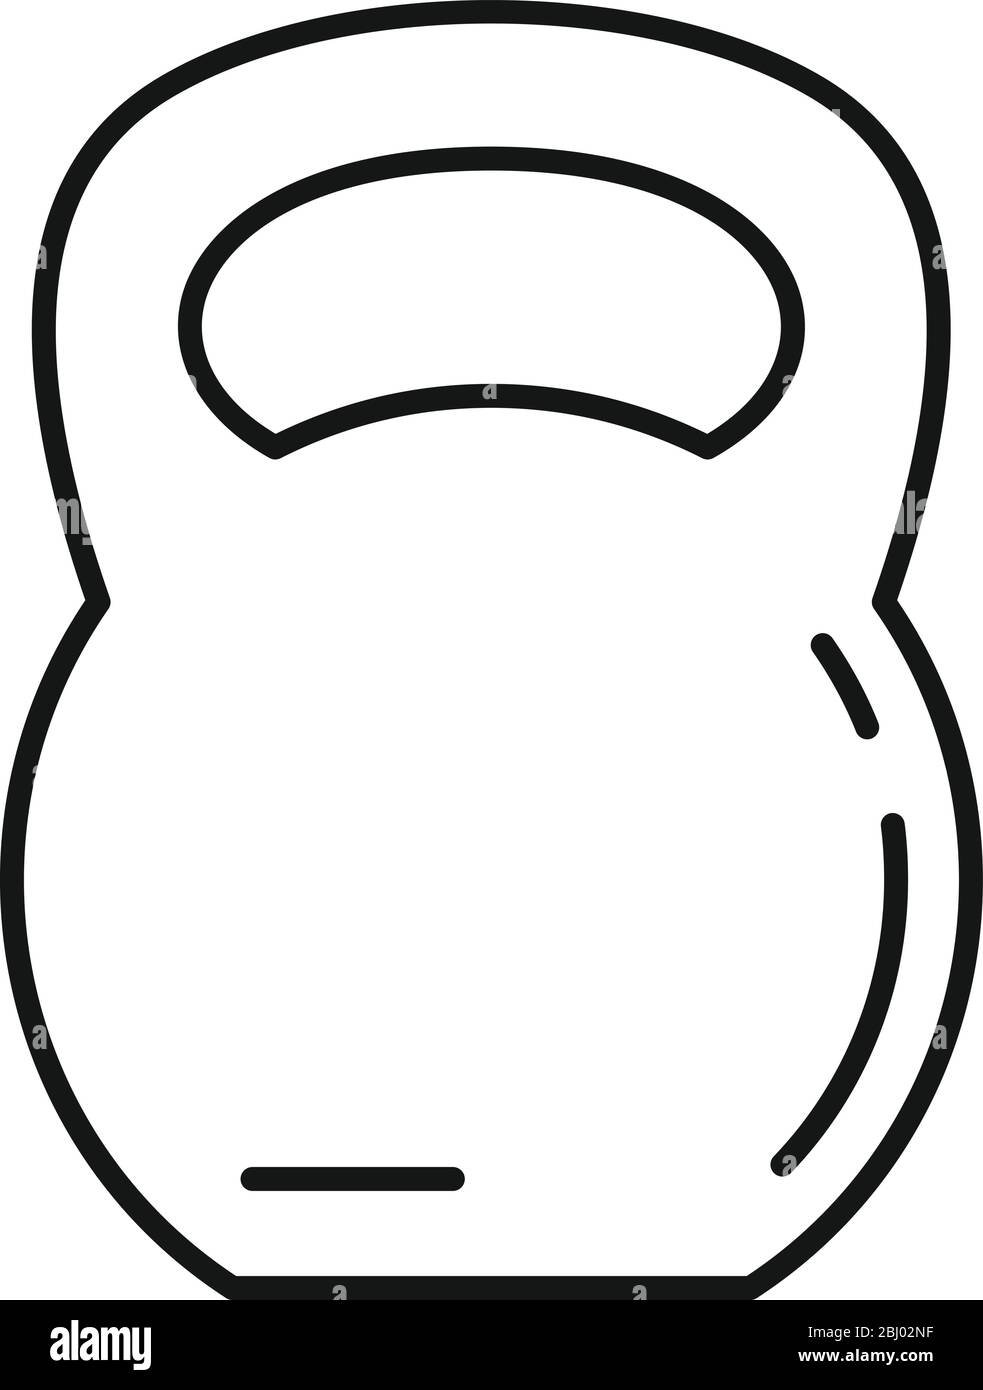 Sport kettlebell Outline sport kettlebell icon for web design isolated on white background Stock Vector Image & Art Alamy